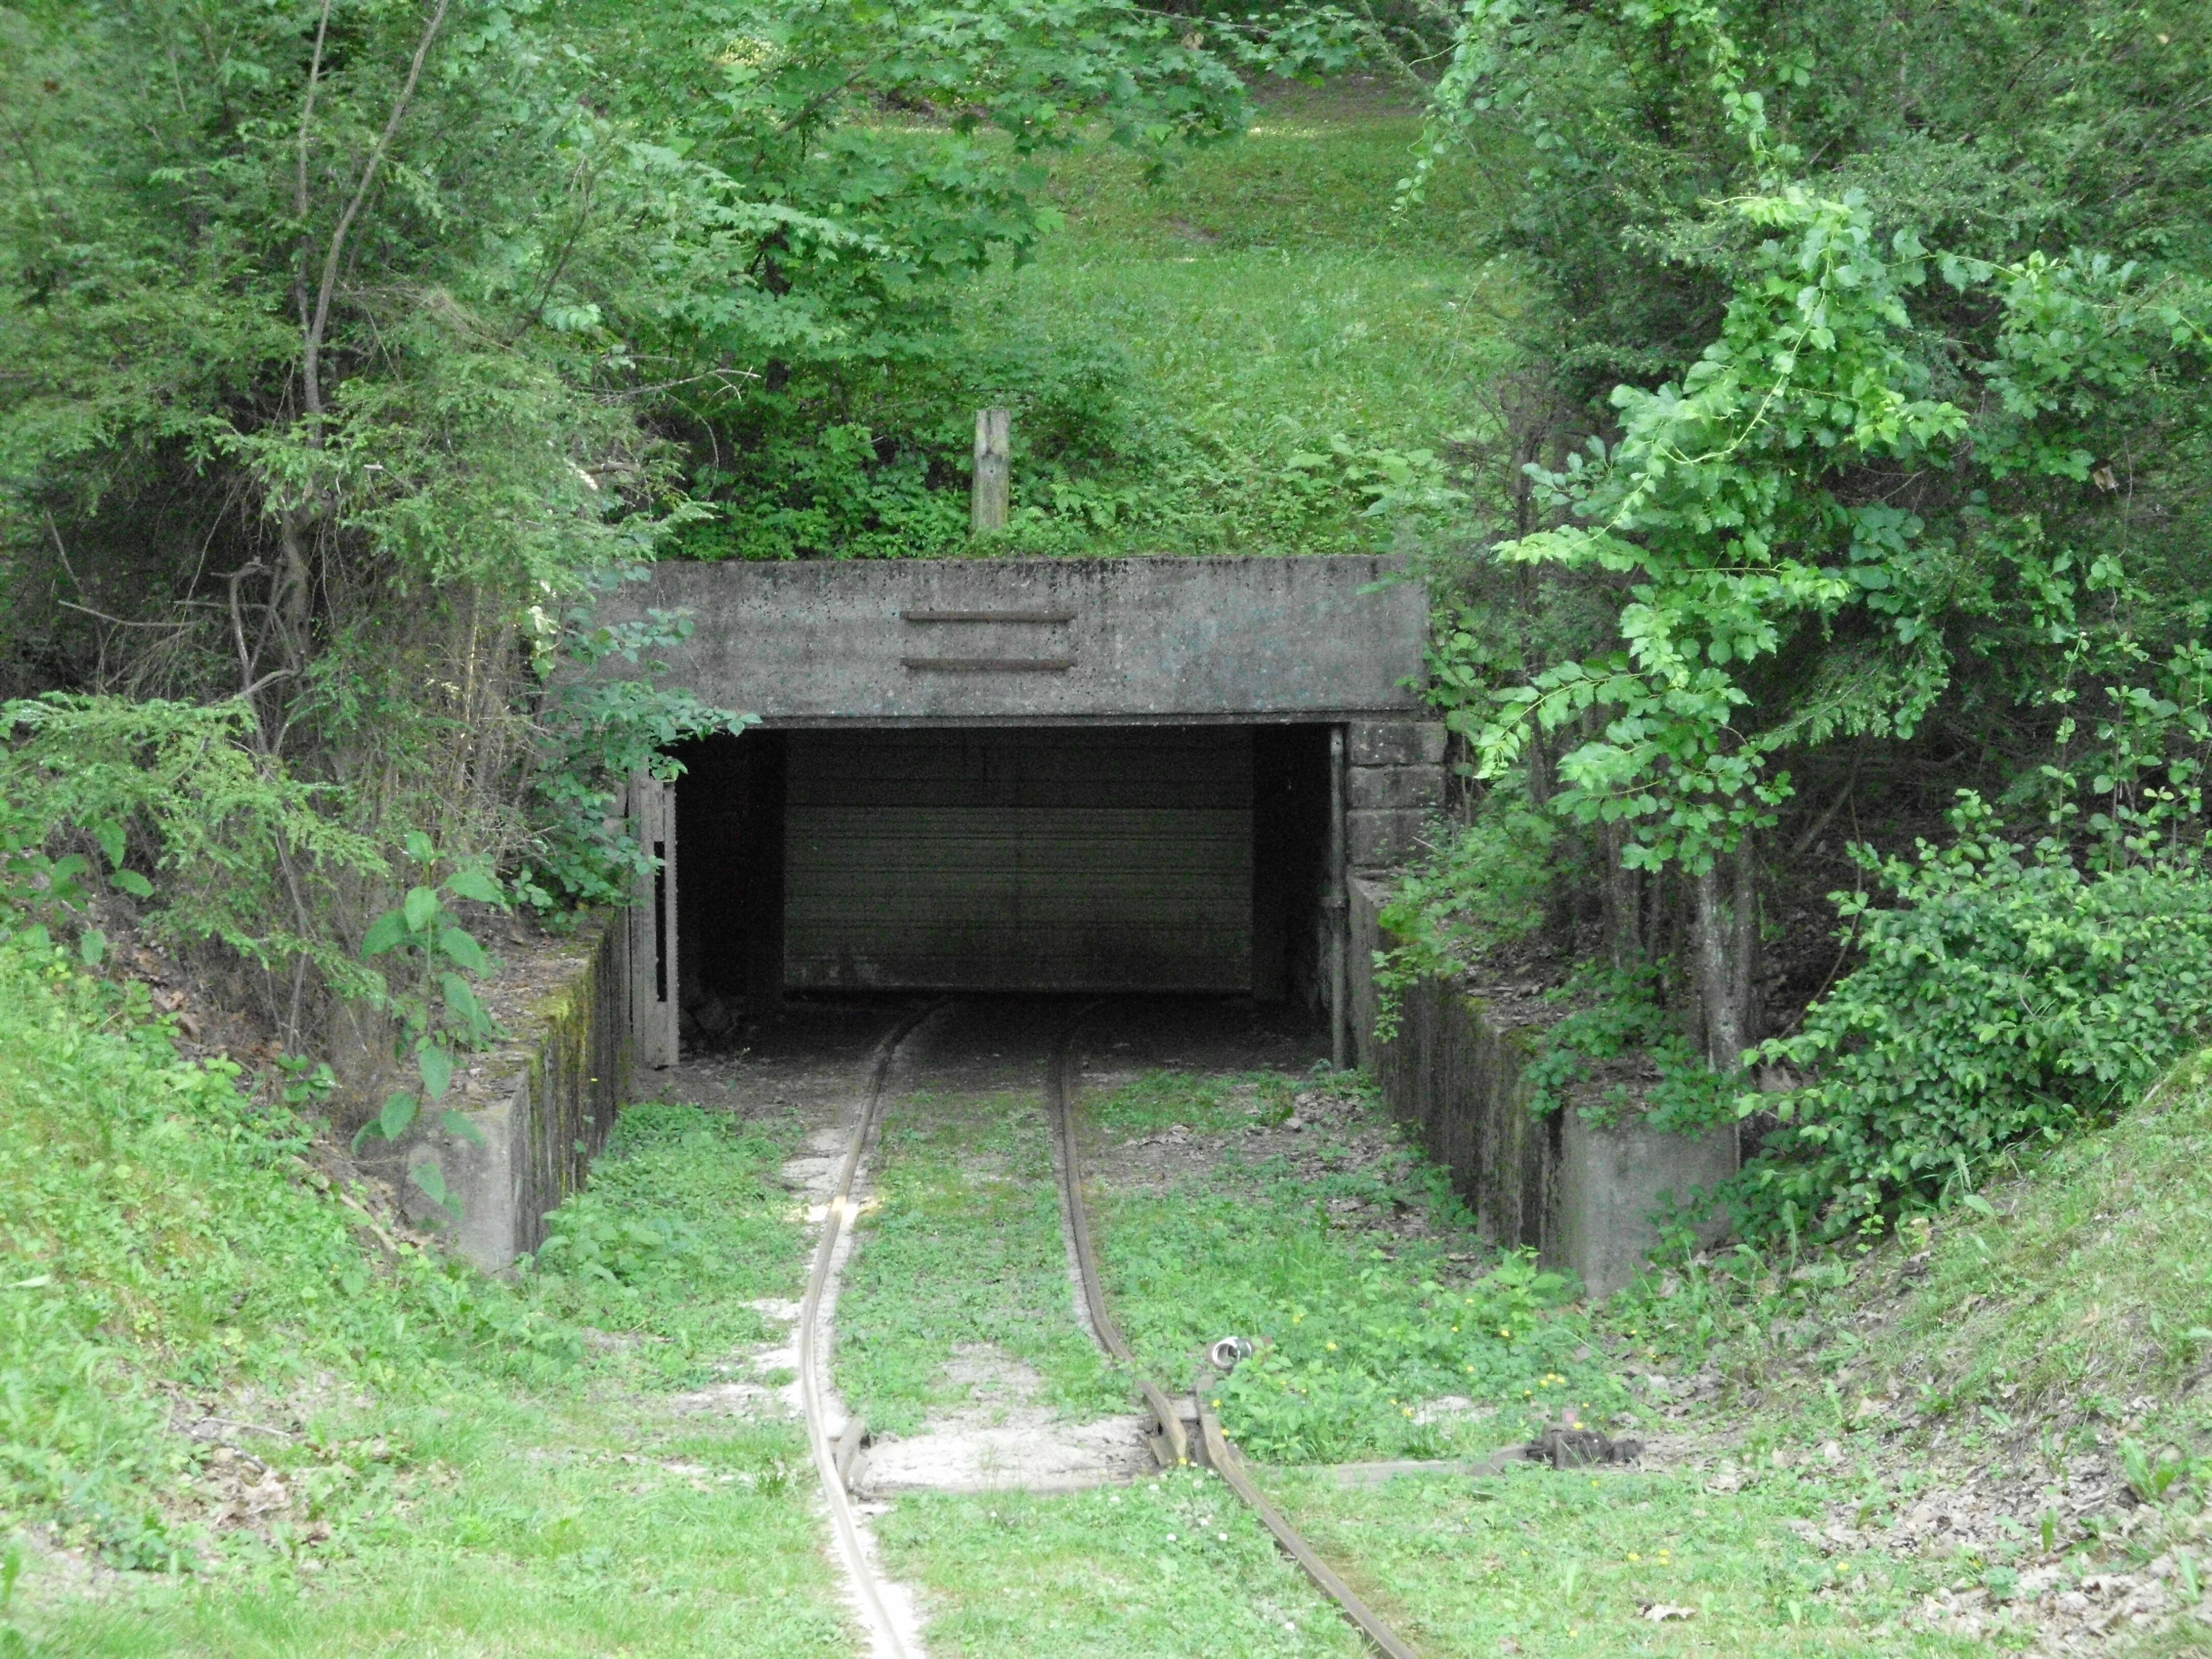 2760-coal-mine-entrance